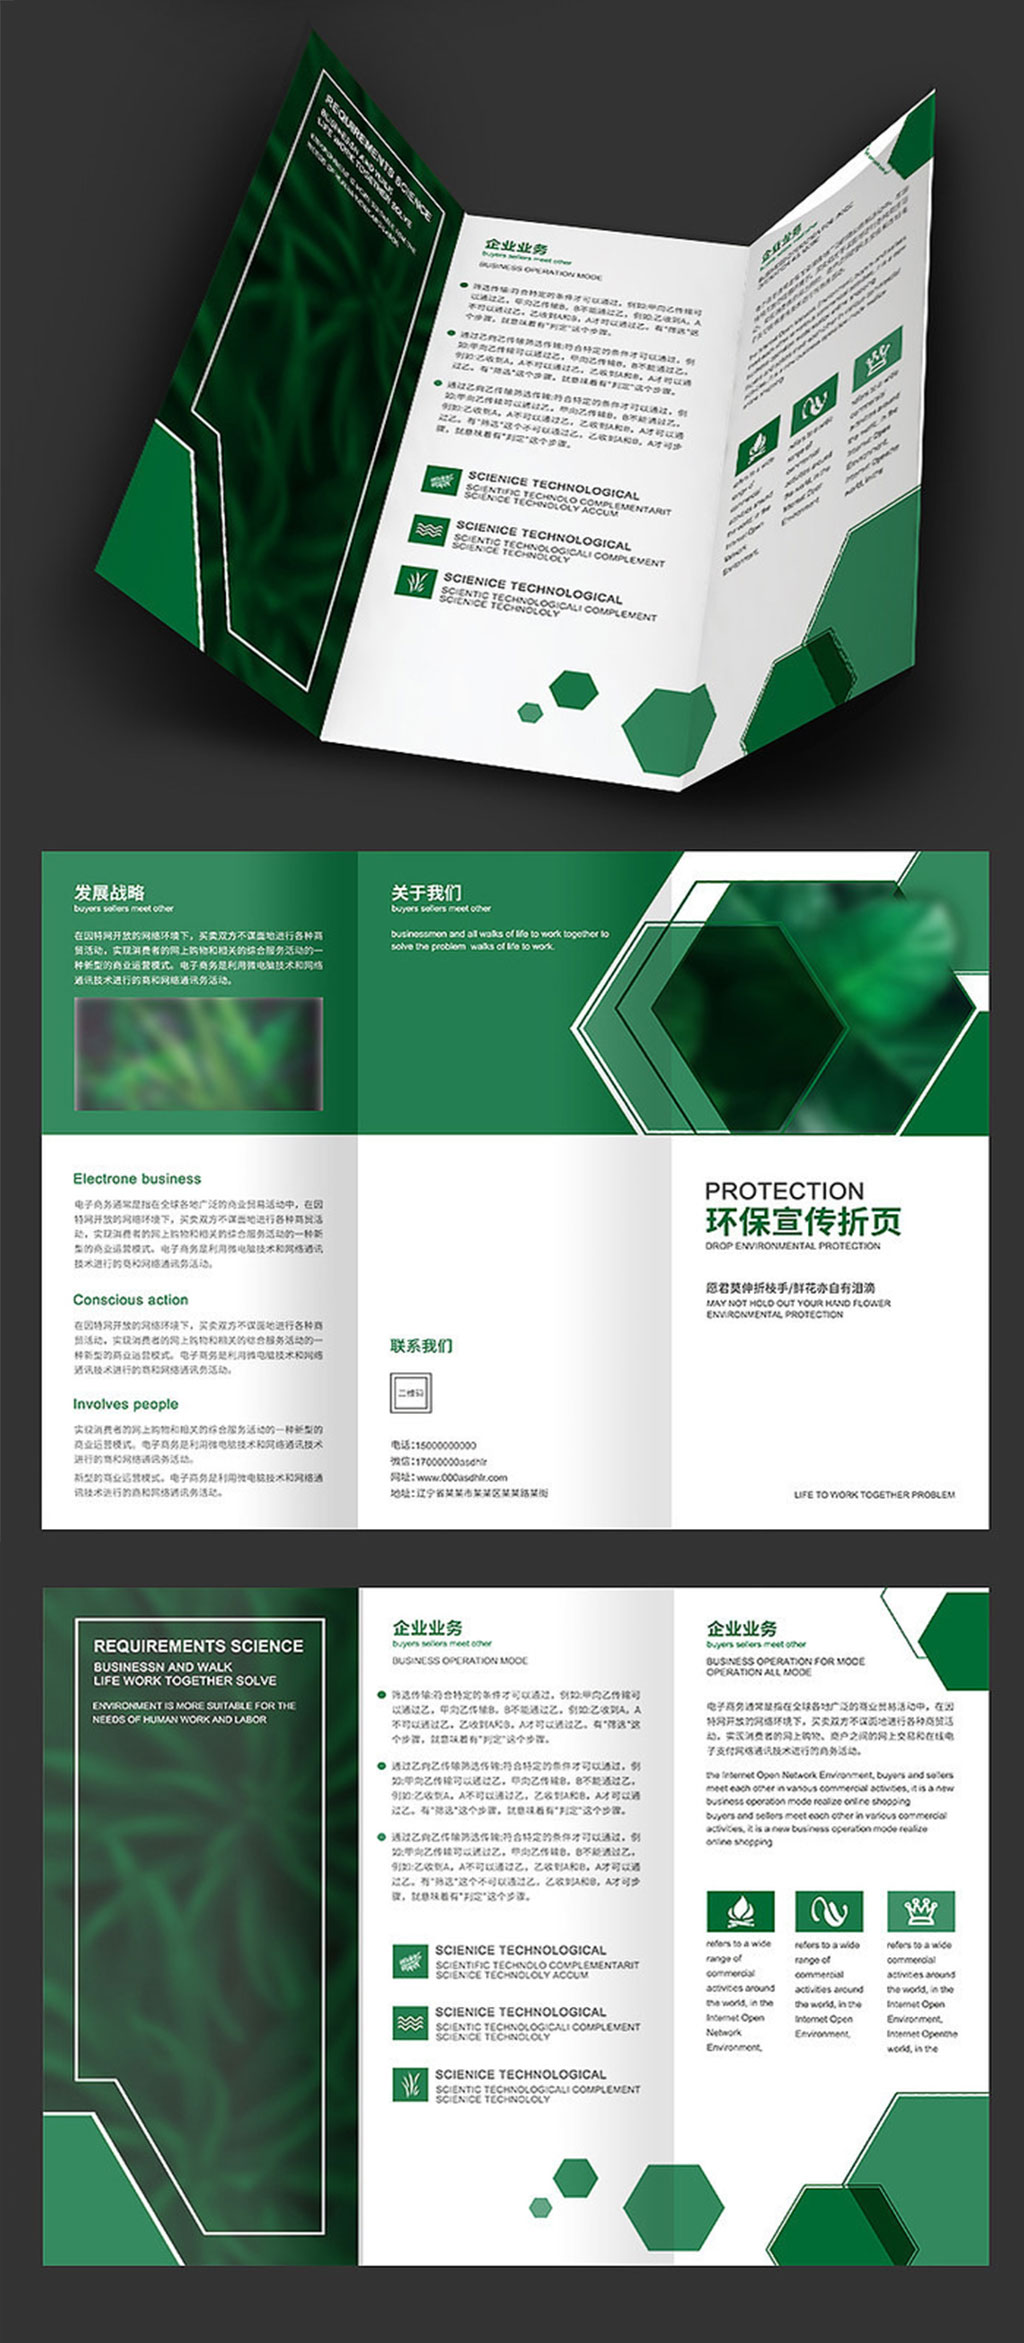 众图网独家提供绿色环保三折页设计素材免费下载,本作品是由阿荟荟